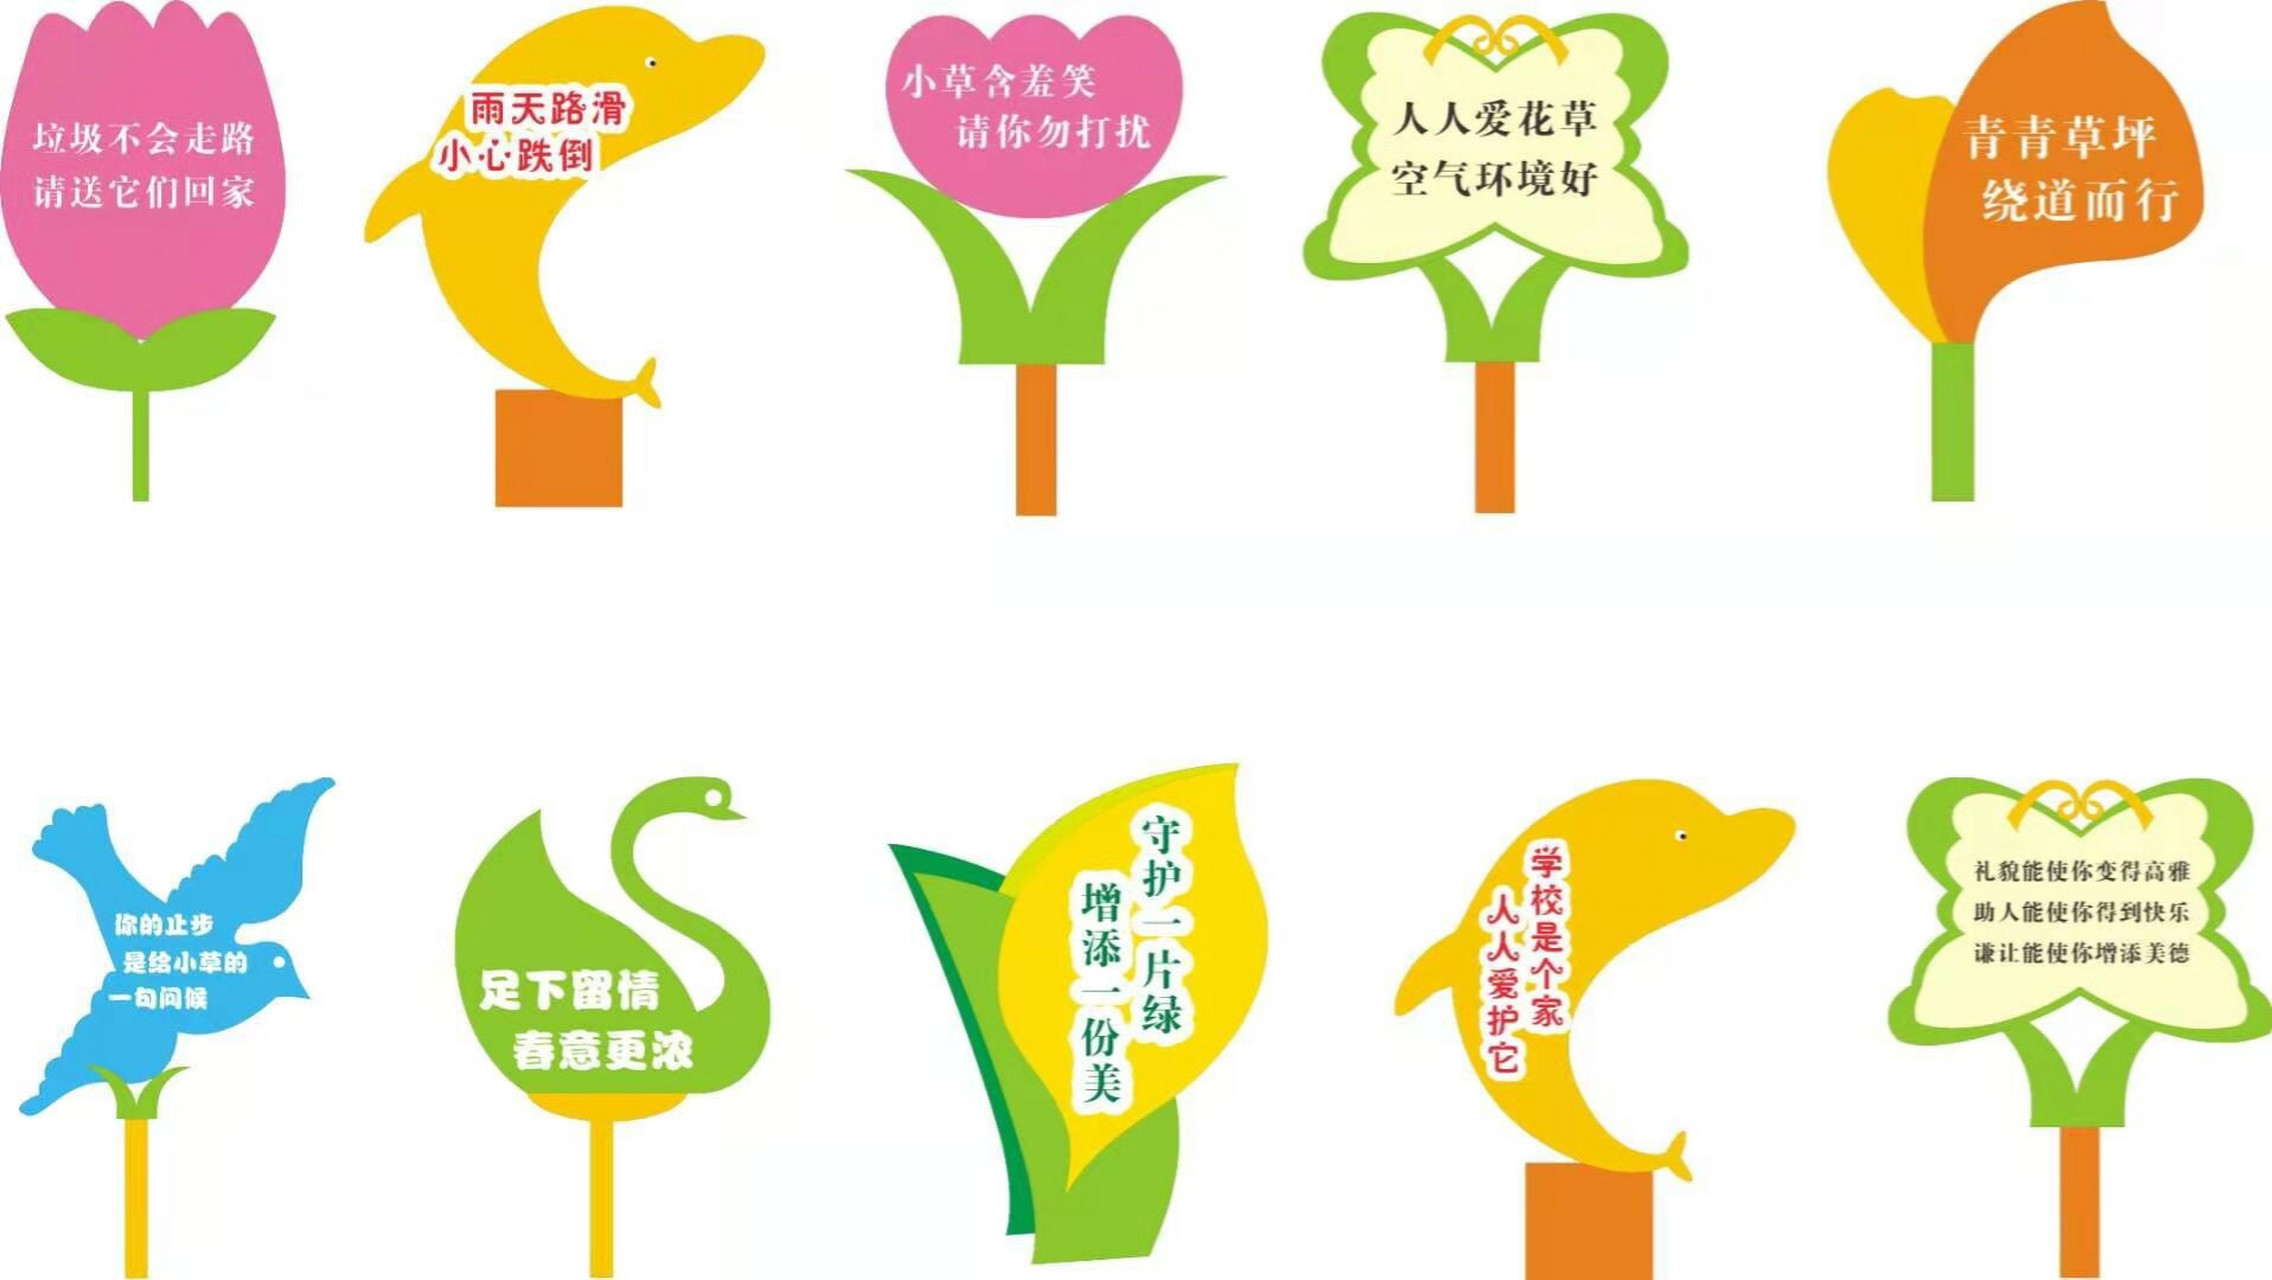 植物树节的宣传标语图片